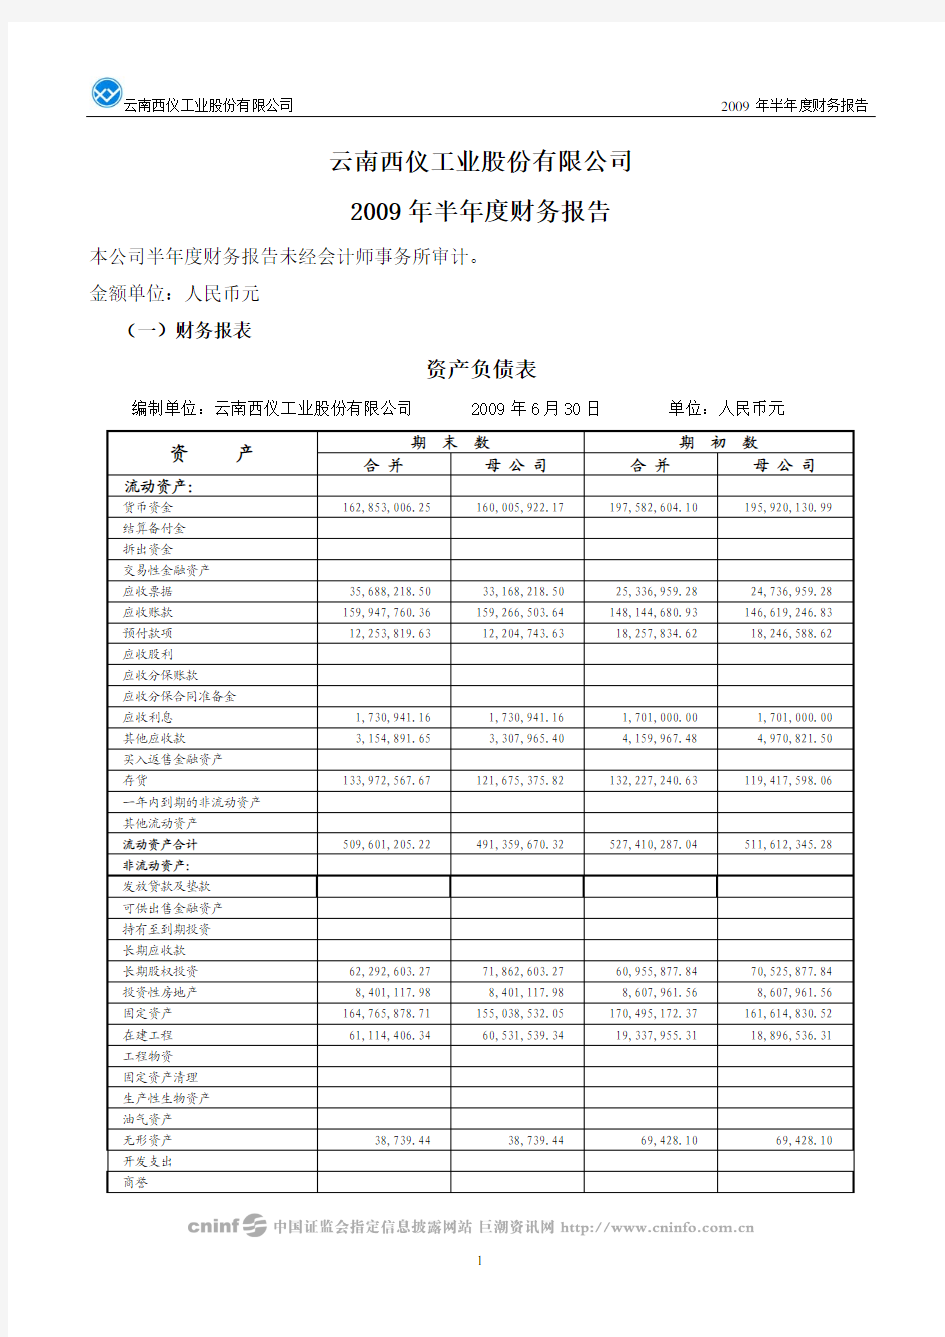 云南西仪工业股份有限公司 2009 年半年度财务报告